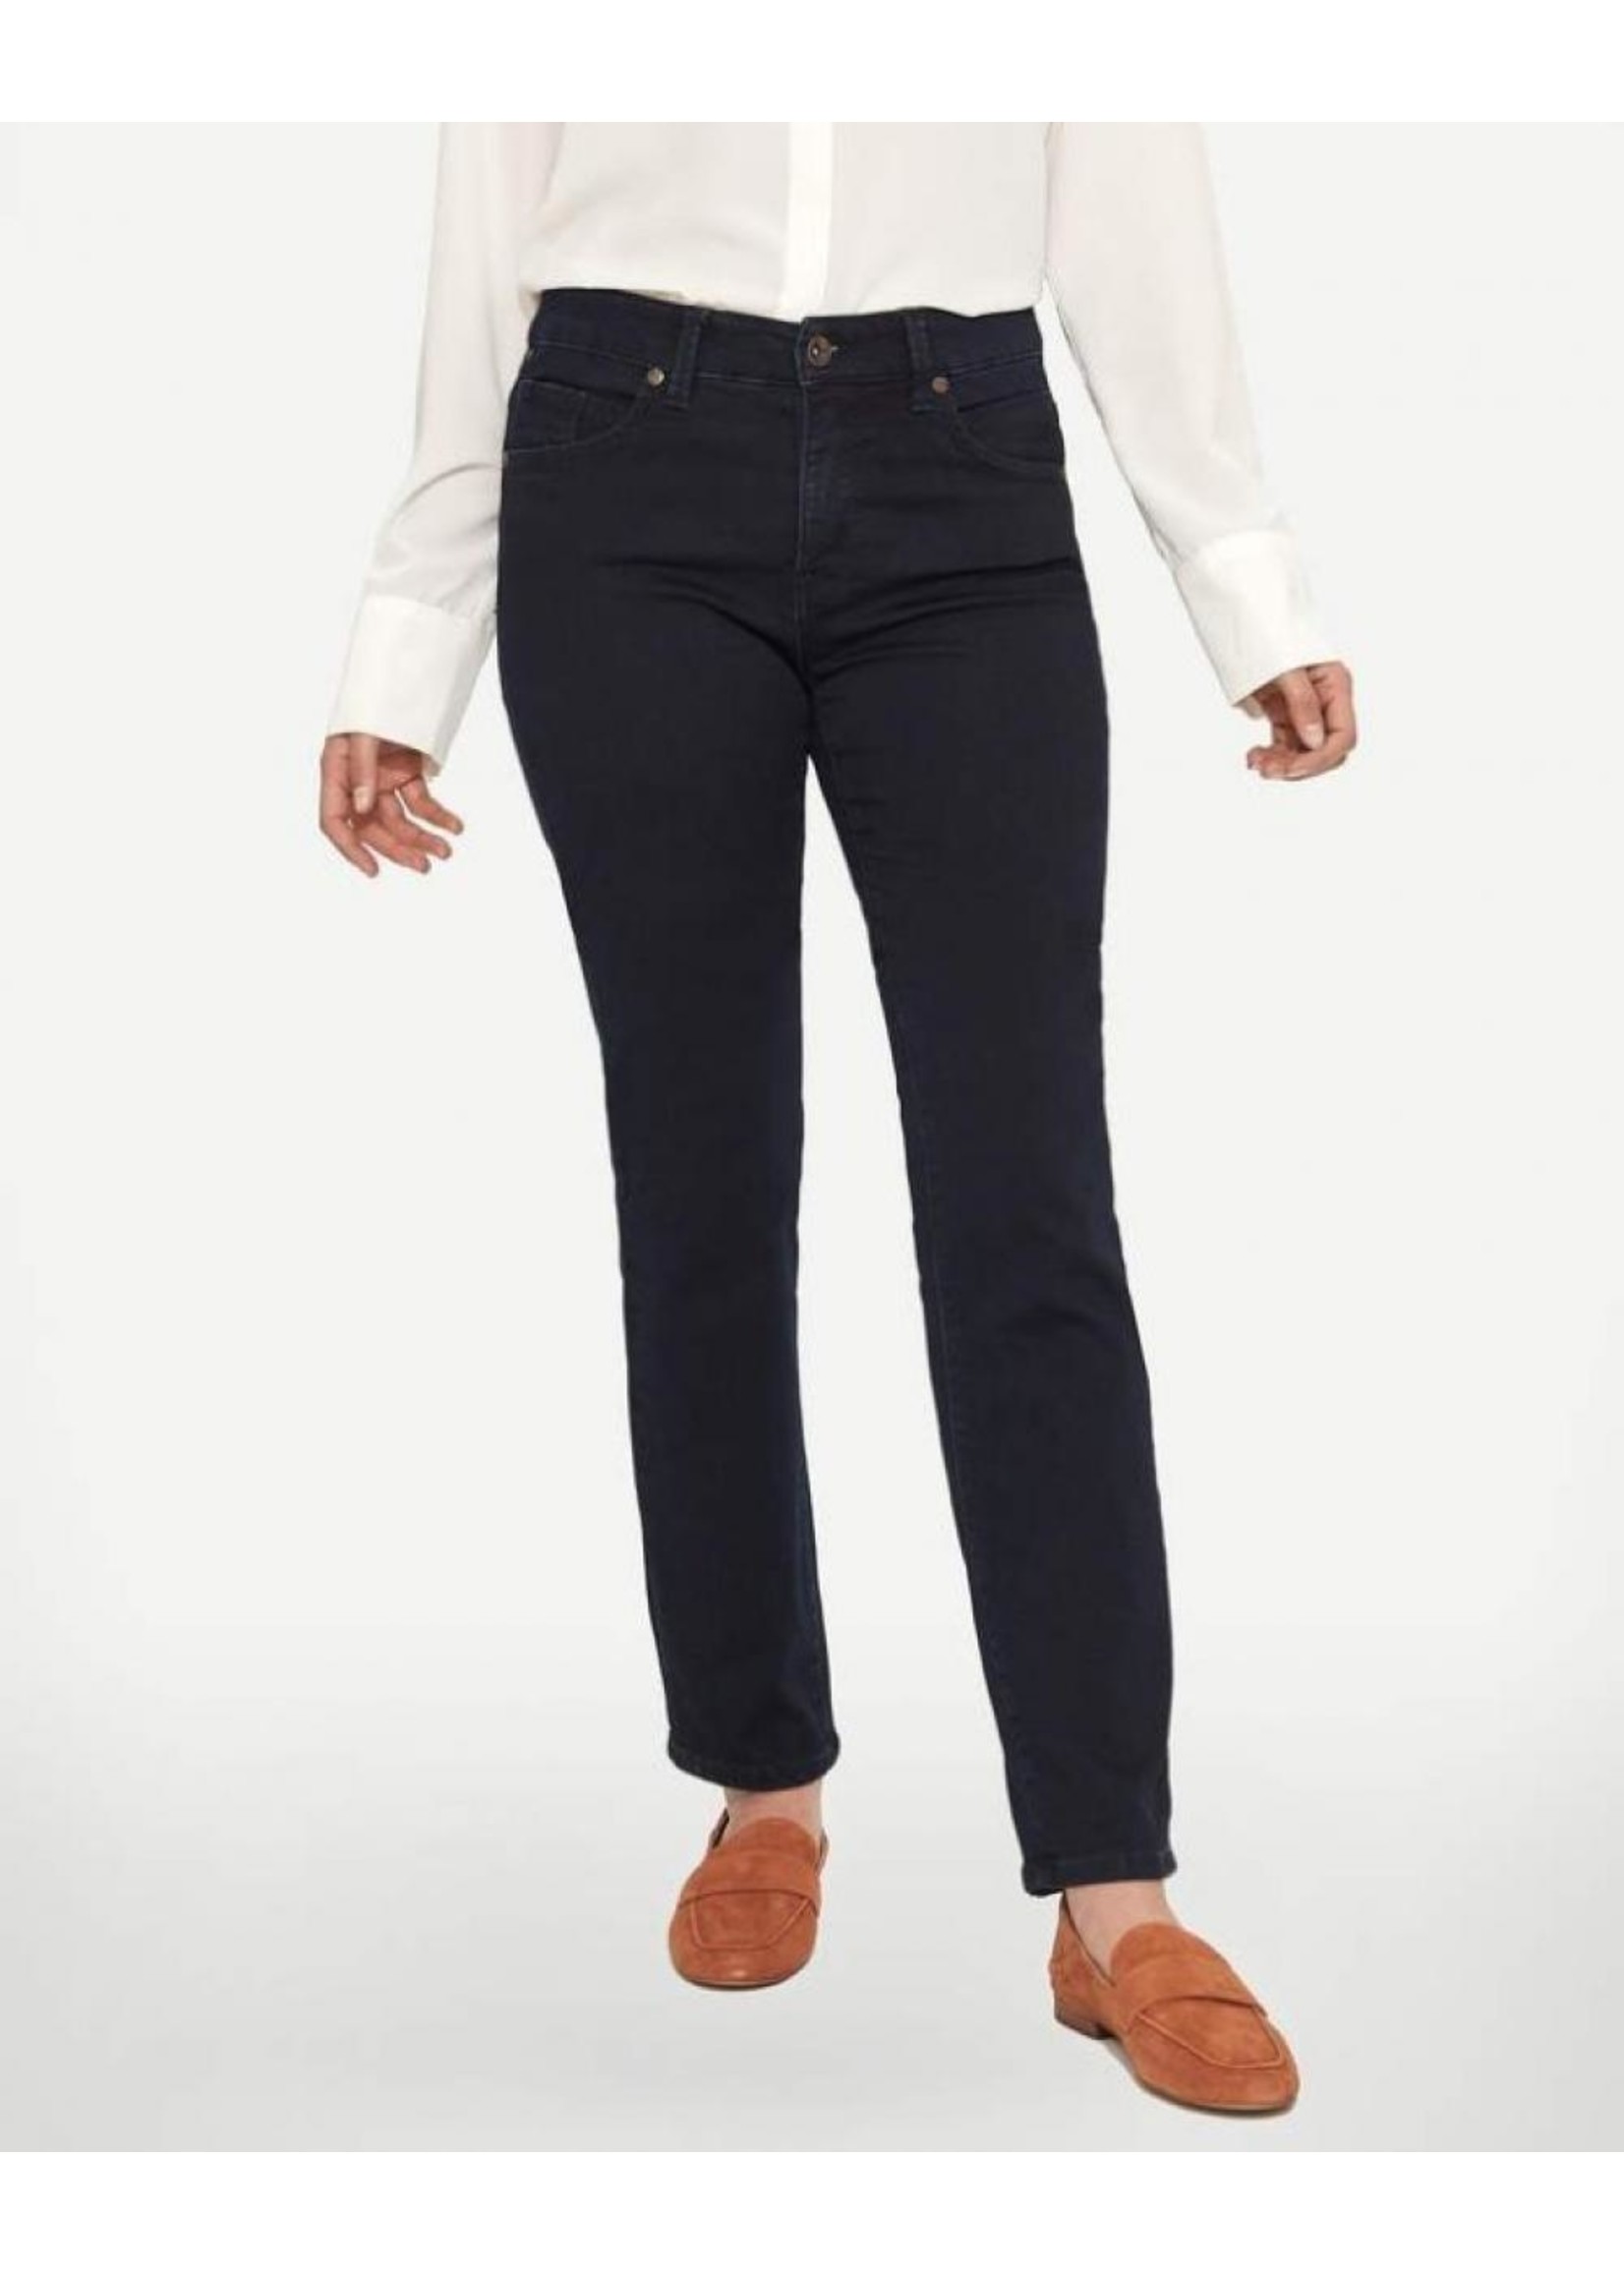 LOIS JEANS & JACKETS Jeans taille régulière NEW GIGI par Lois-Femme